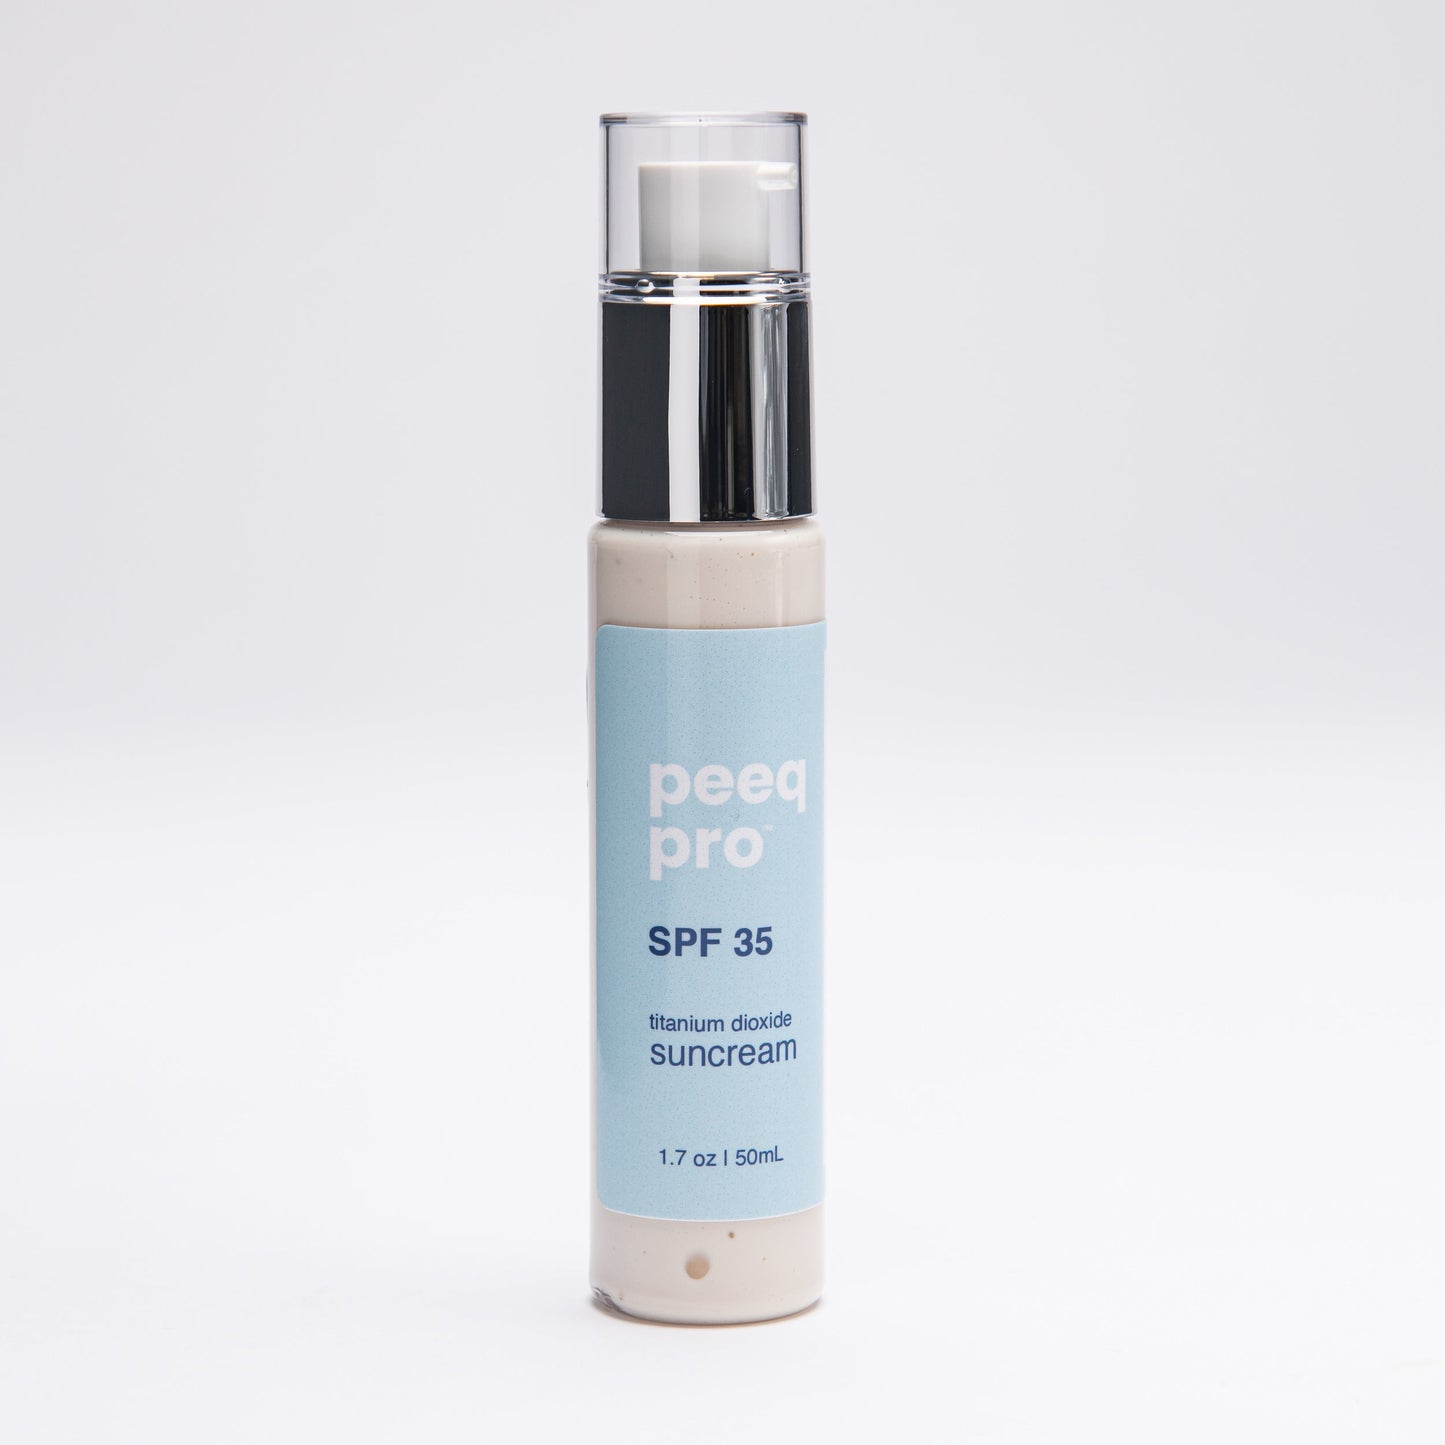 Peeq Pro SPF 35 suncream bottle